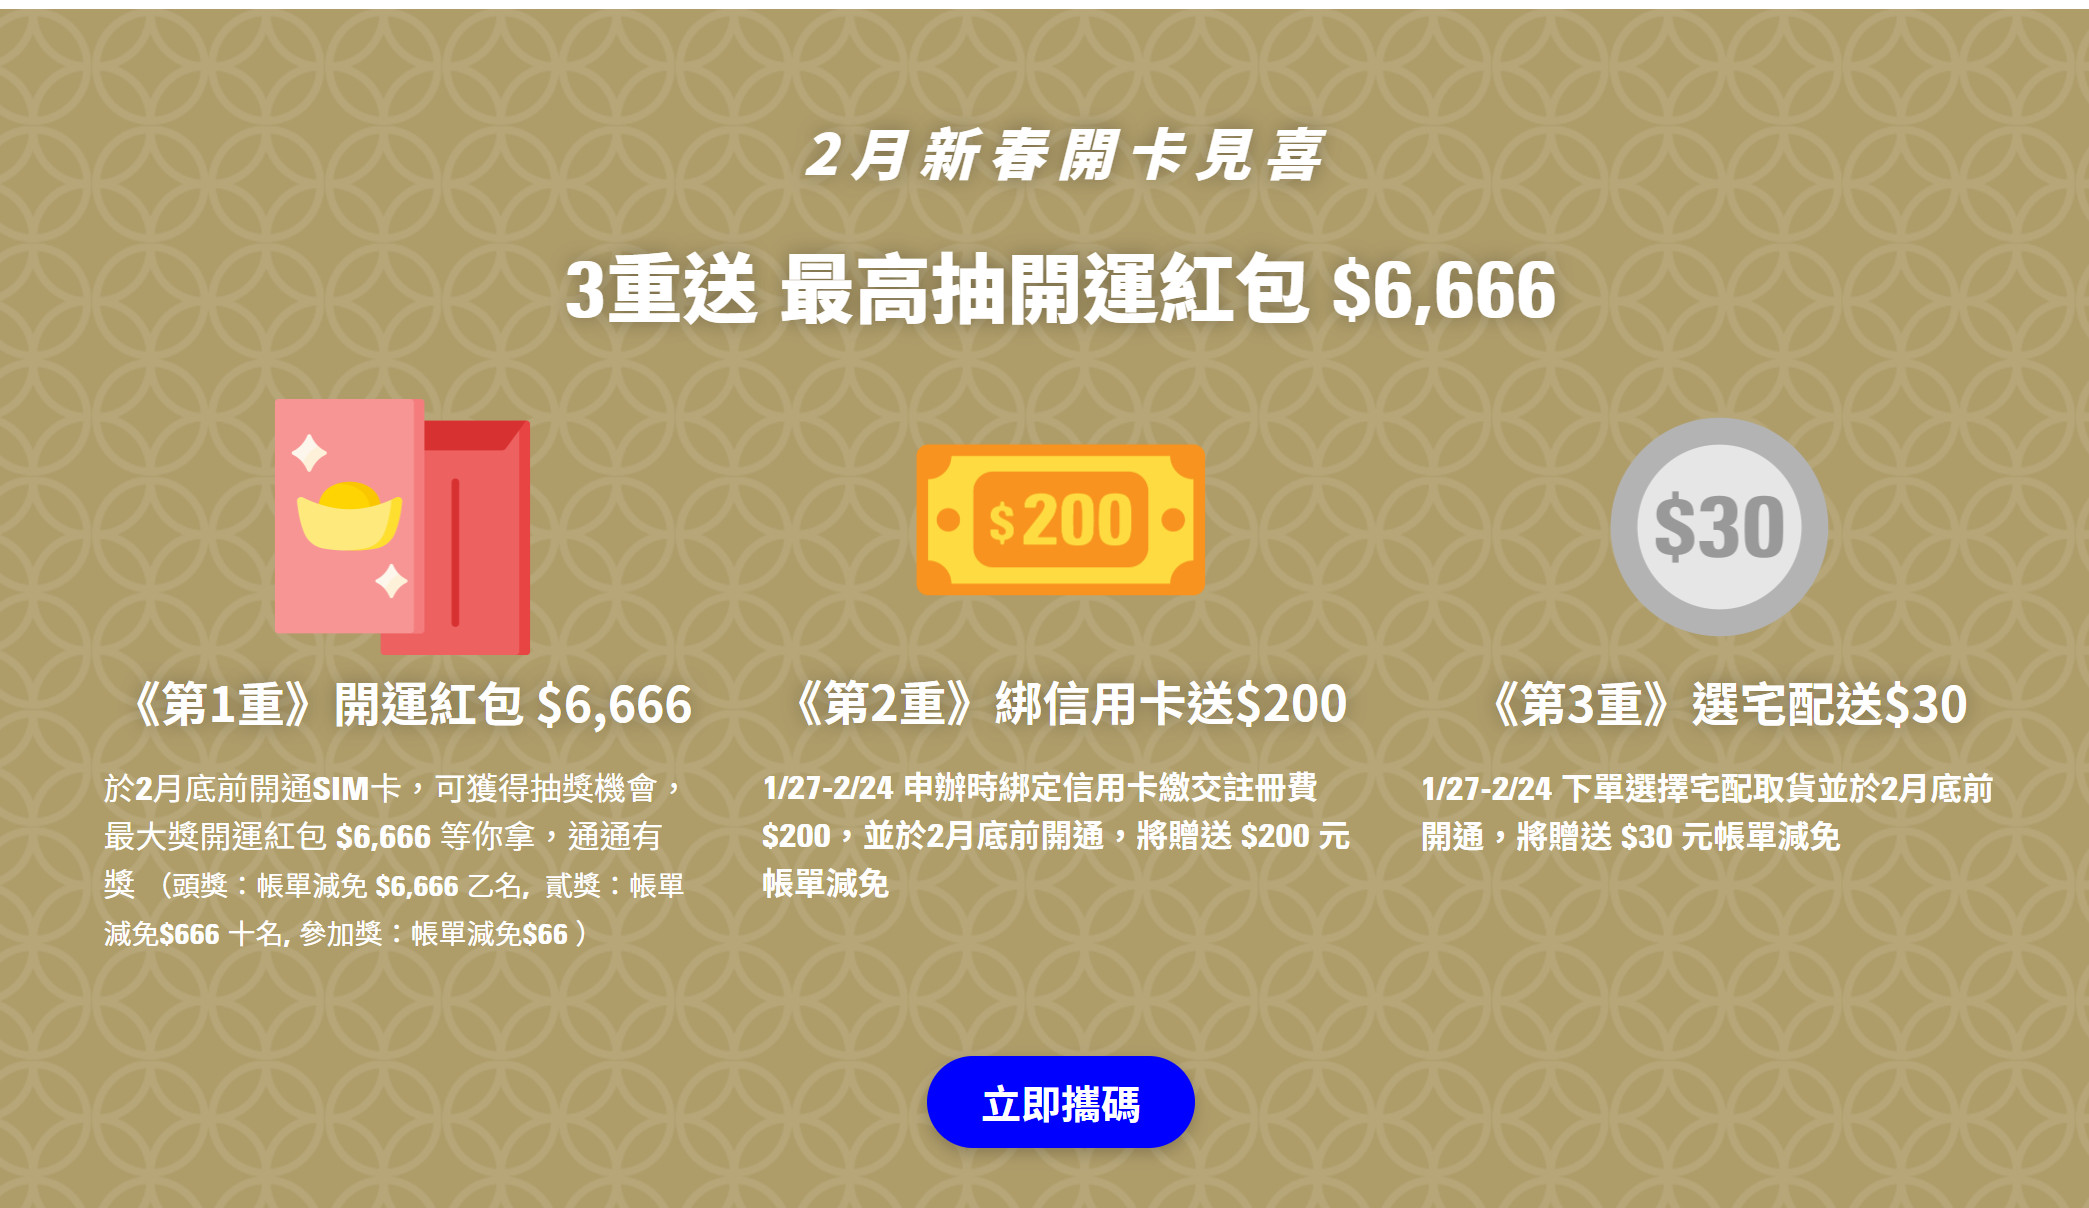 【無框行動】新春專案，中華電信大4G網路吃到飽466元，低流量只要166元!超適合搭配台灣之星雙11專案。 - 無框行動網路 - 敗家達人推薦